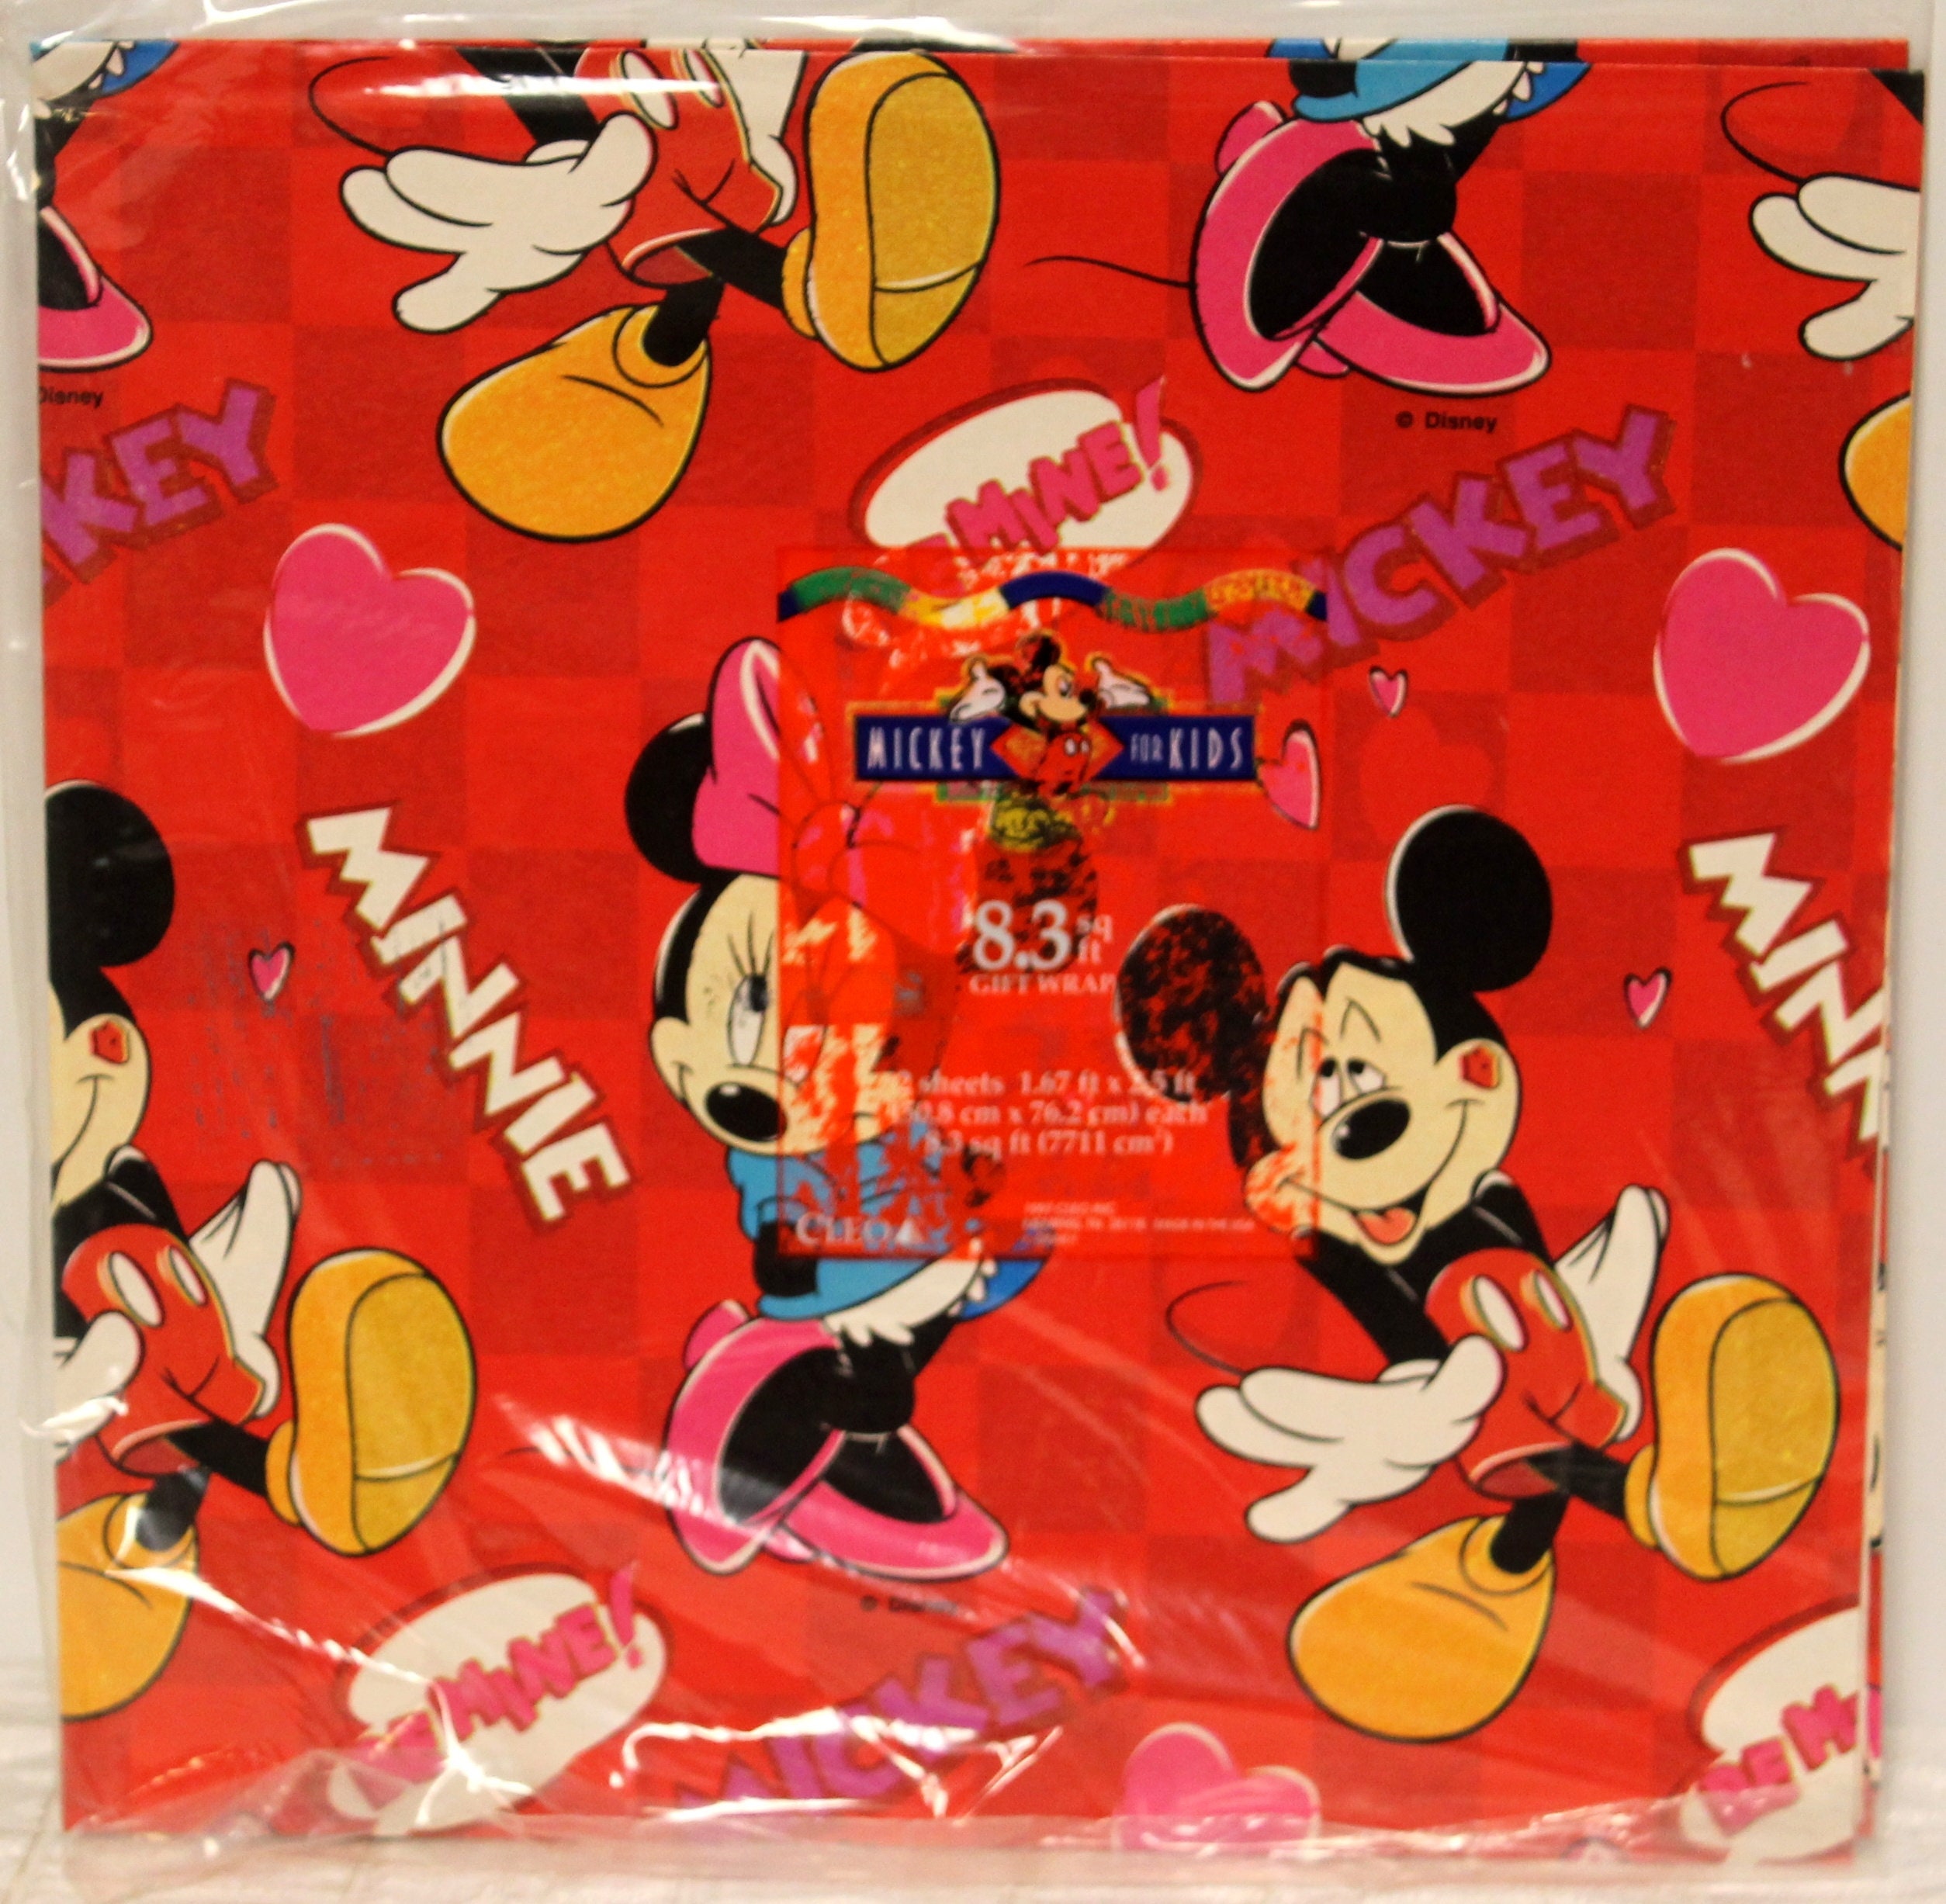 Lot de 6 Rouleau de papier cadeau Disney Mickey Minnie - Modèle